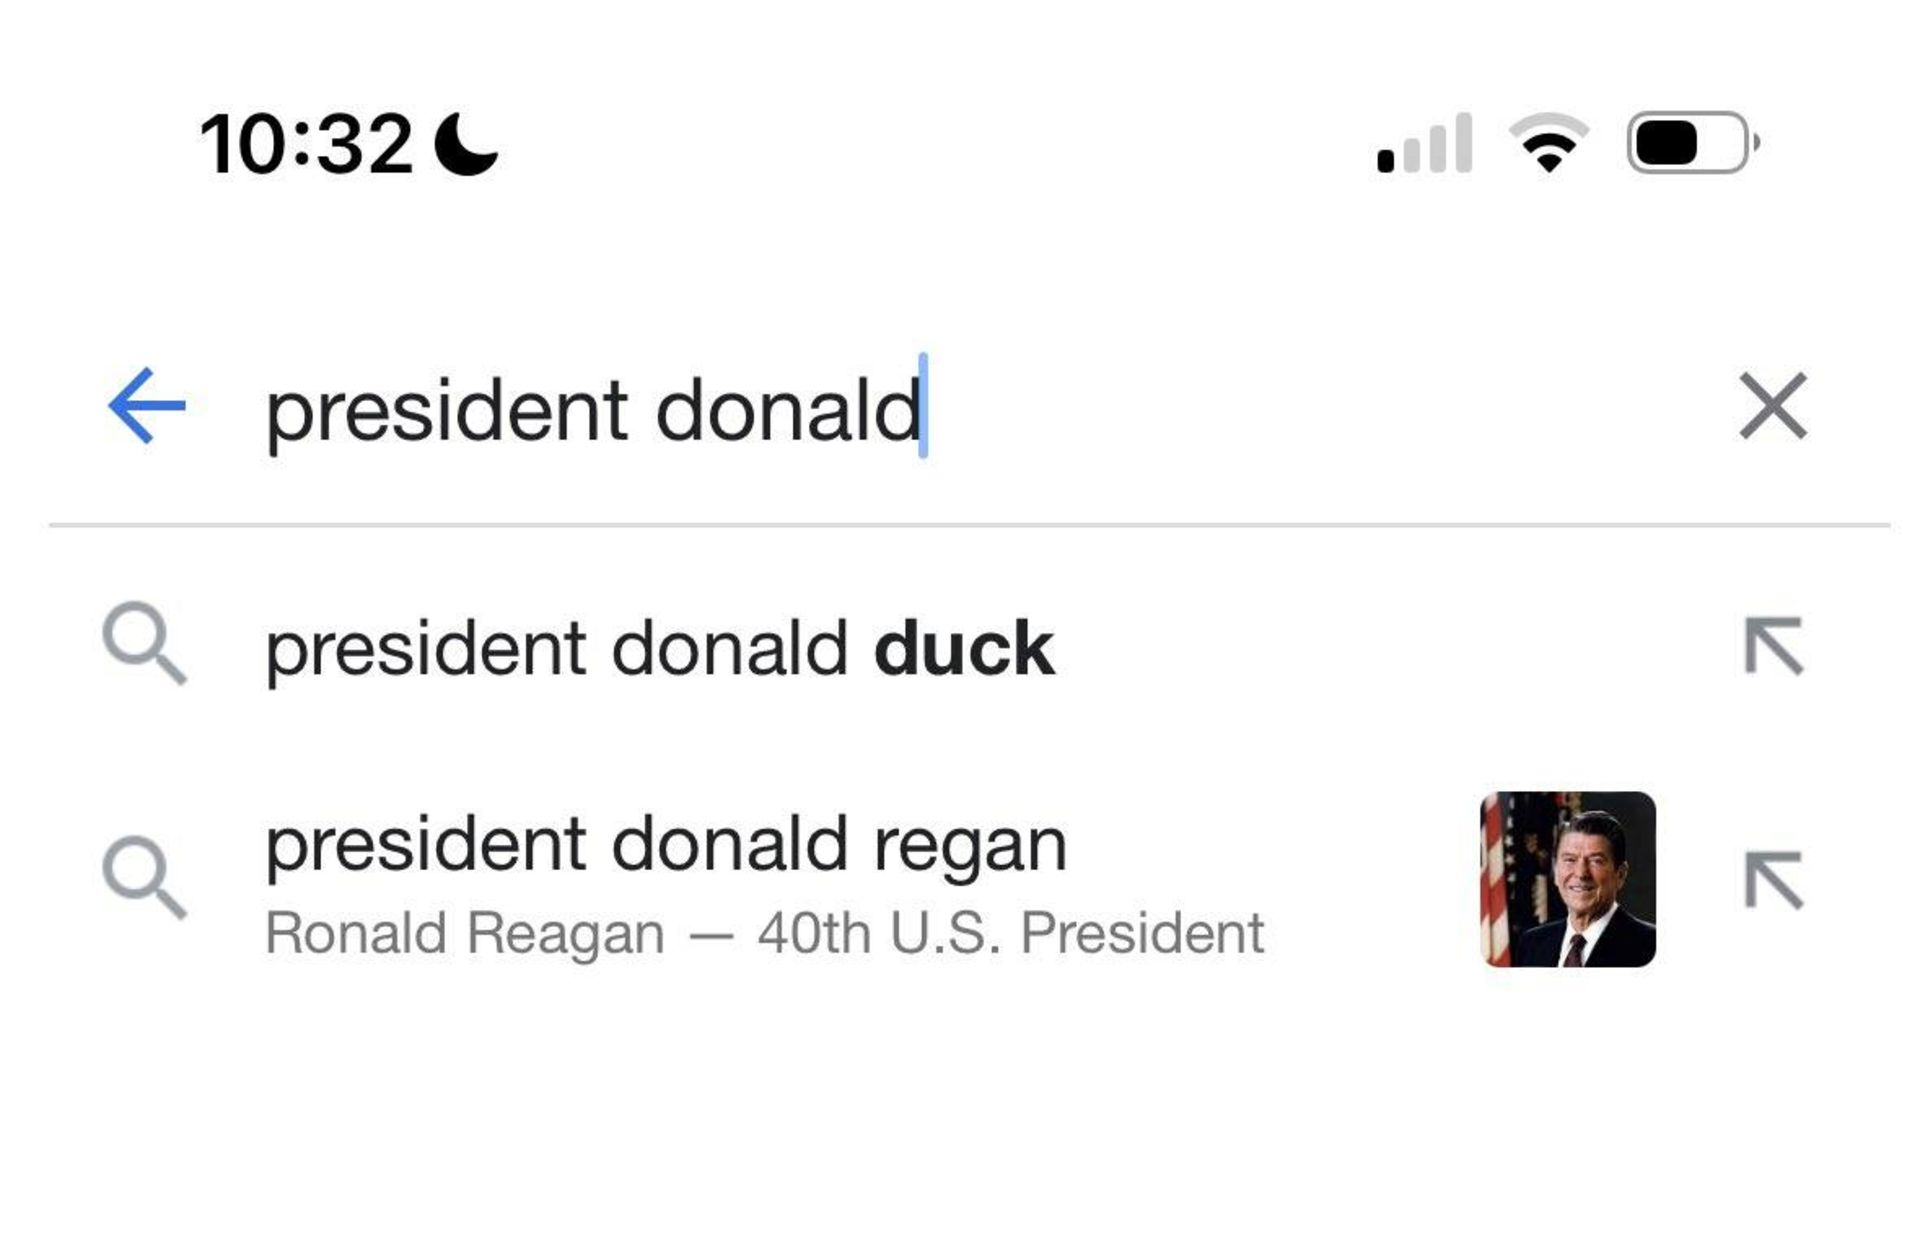 نتایج جستجوی عجیب گوگل هنگام جستجوی مرتبط با دونالد ترامپ